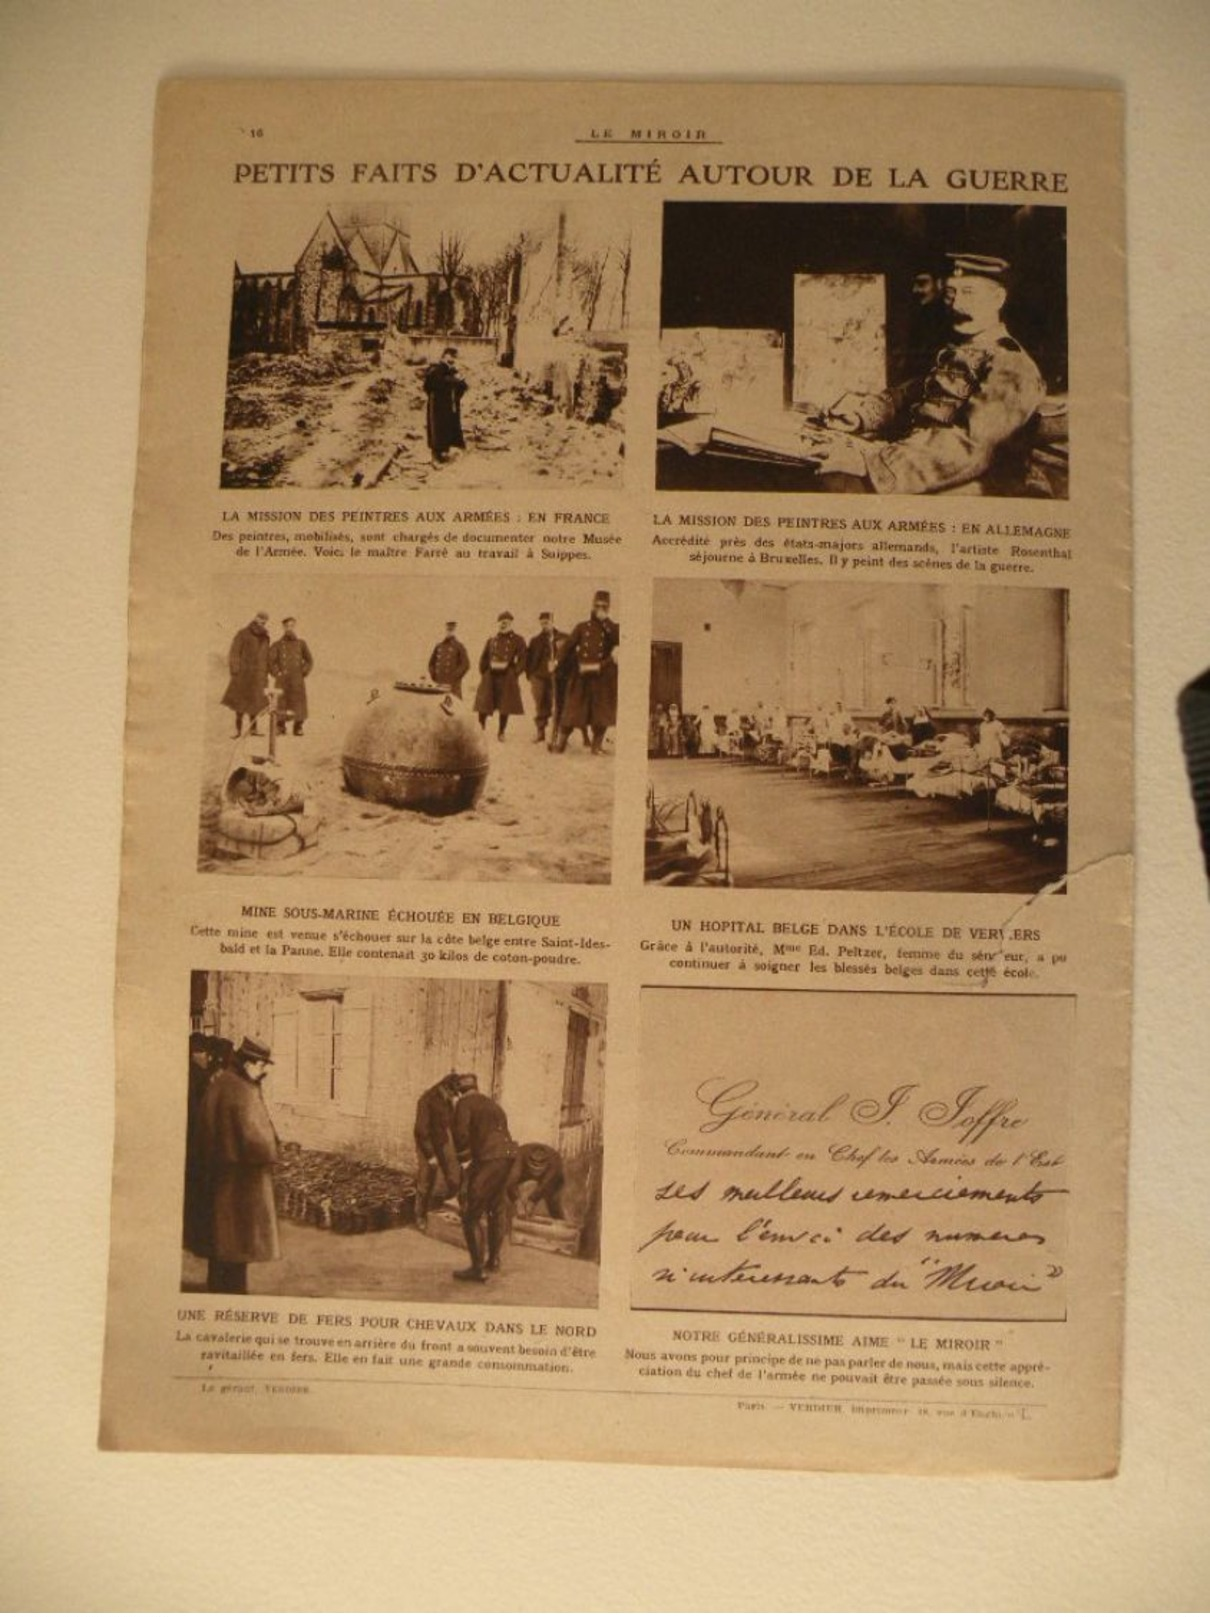 Le Miroir,la Guerre 1914/1918 > Journal n°63 > 7/2/1915,Général Von Kluck,Atrocités Autrichiennes en Serbie